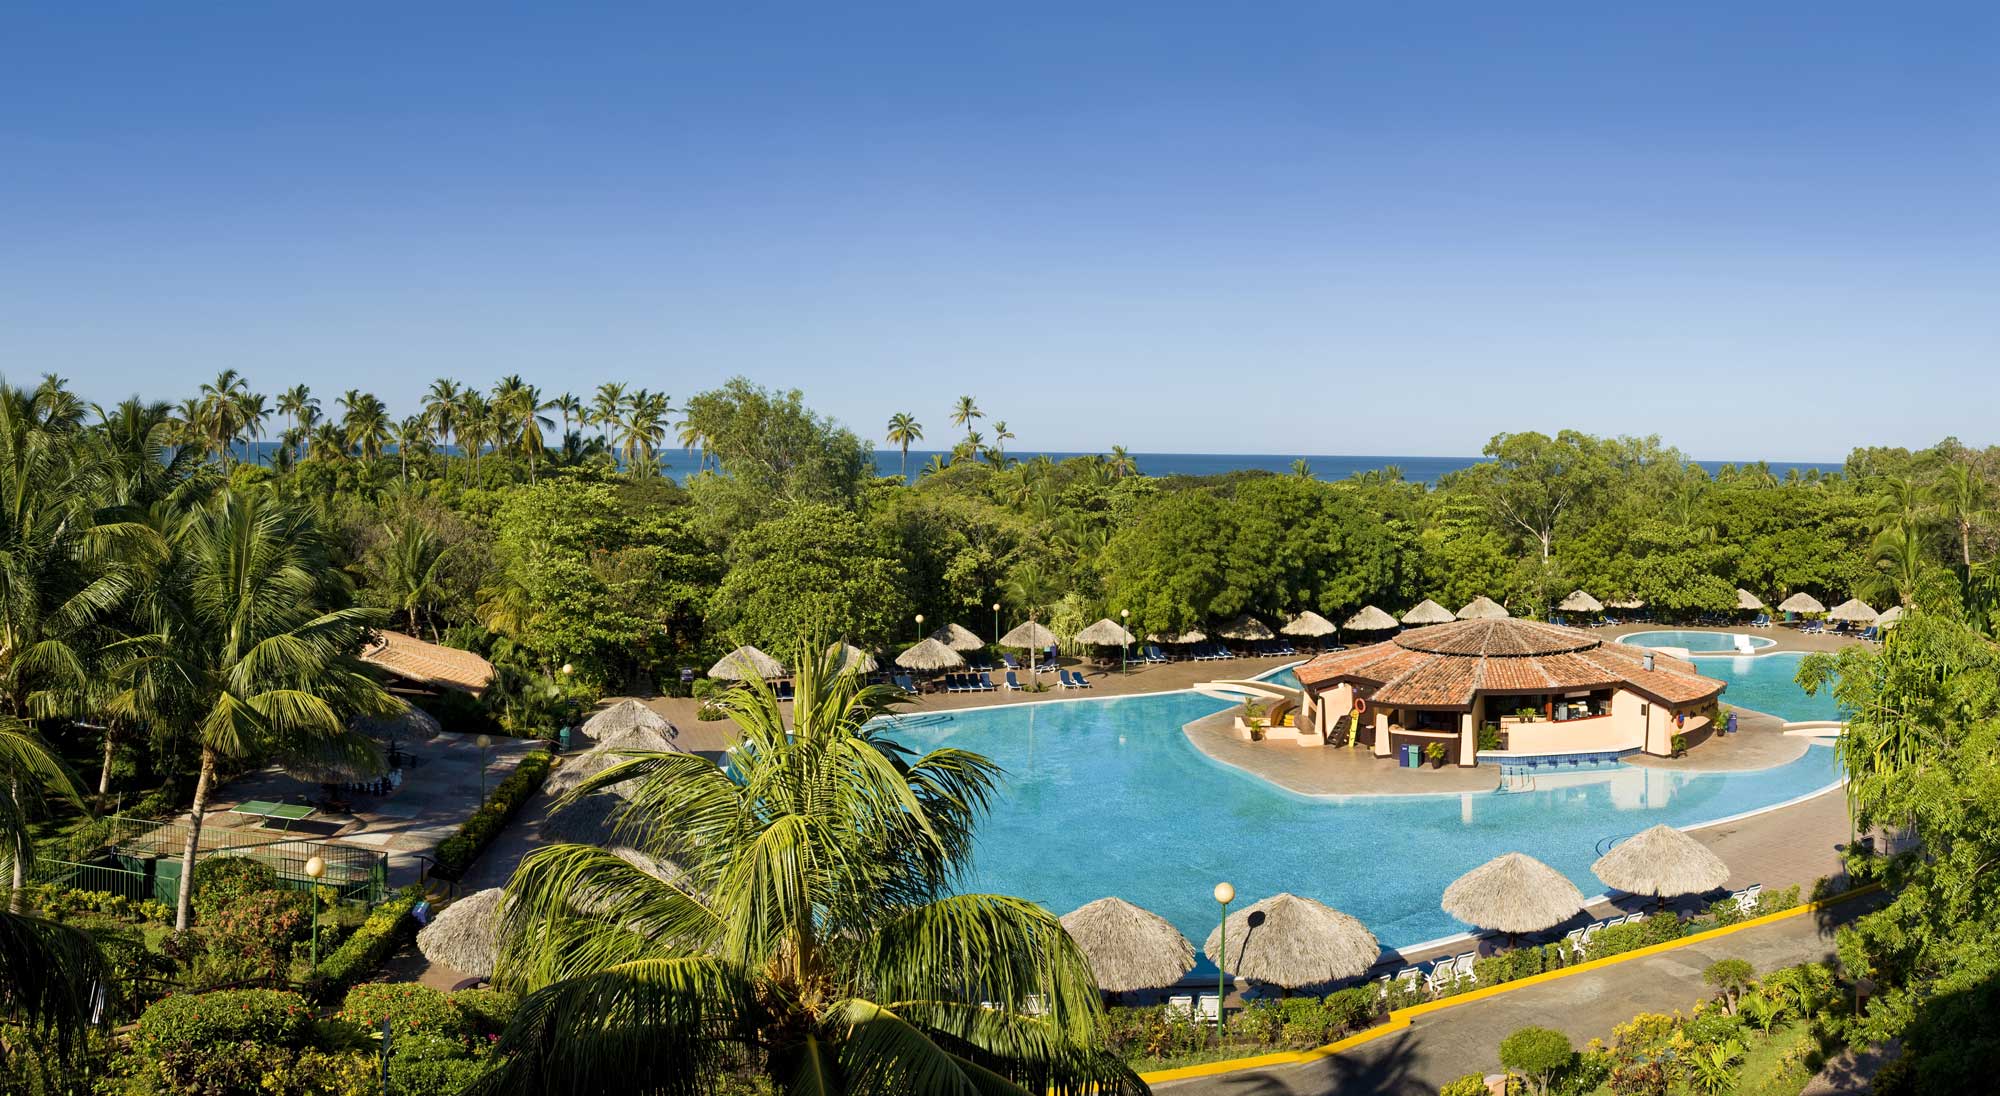 Los Mejores Resorts Todo Incluido en Costa Rica y Belice 2